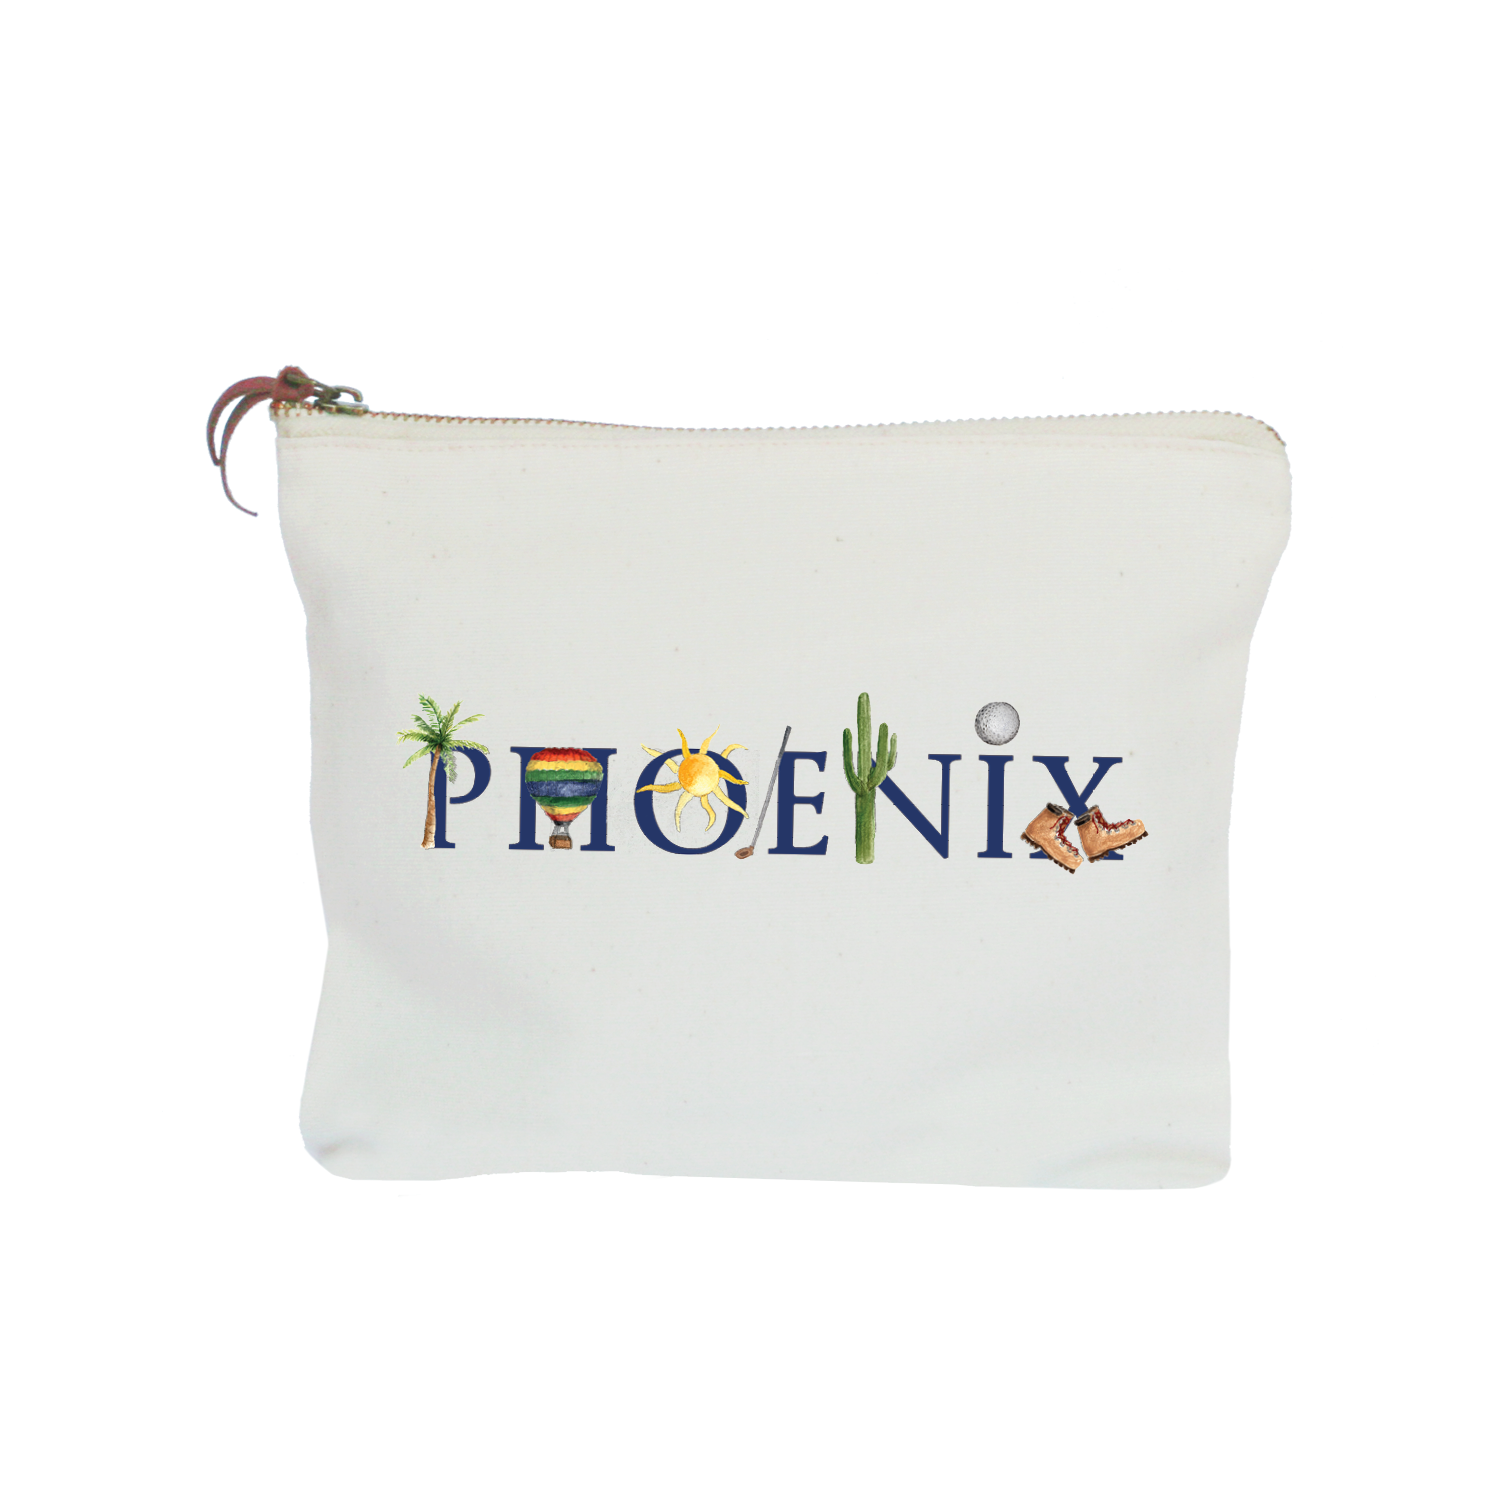 phoenix zipper pouch